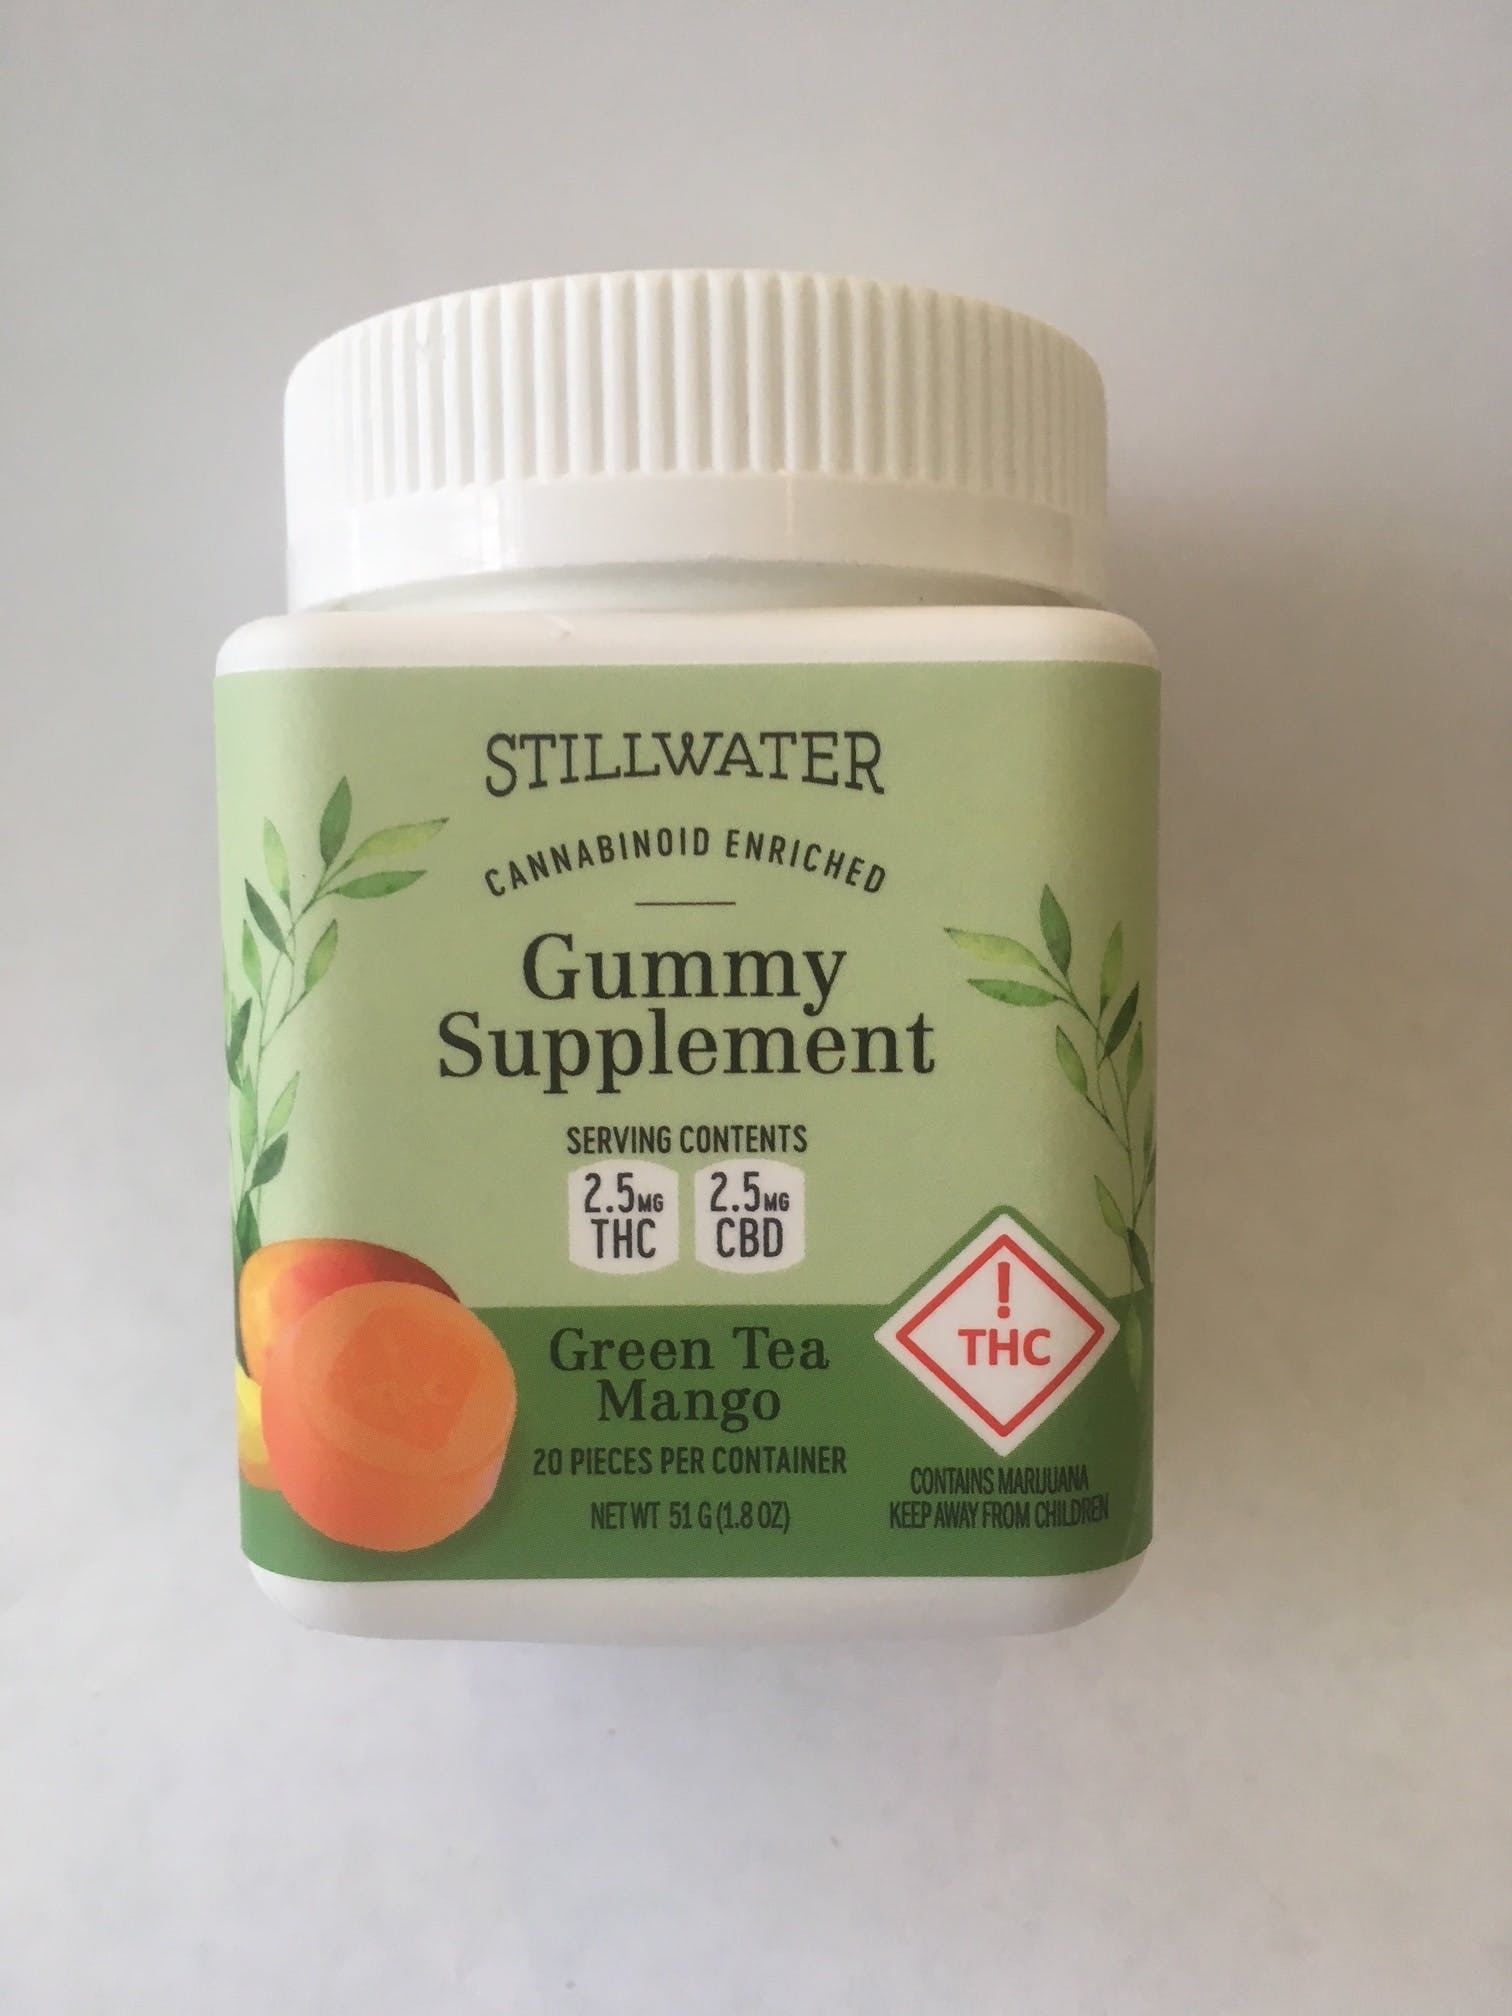 edible-stillwater-cbdthc-11-gummy-supplement